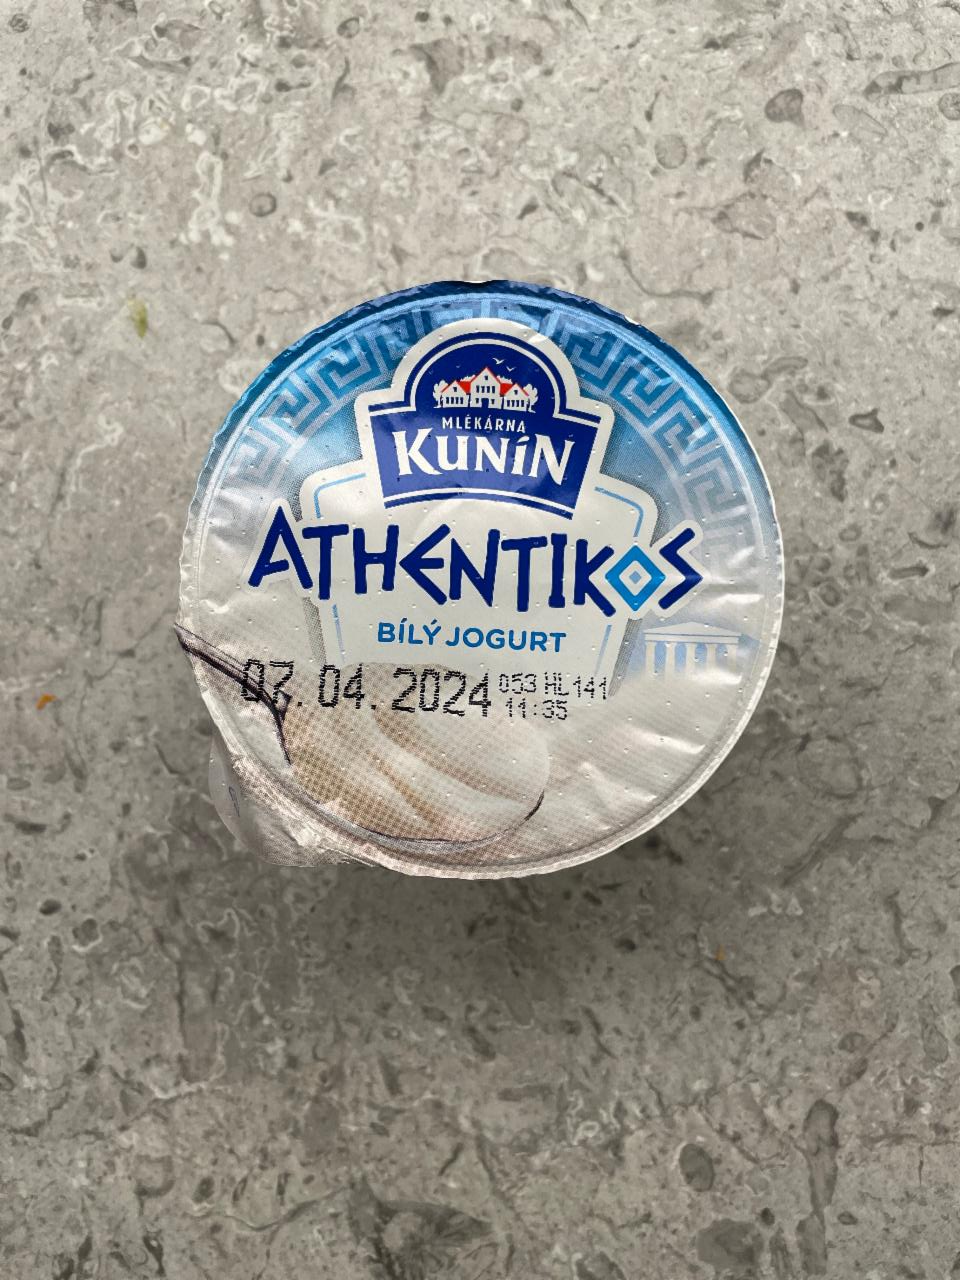 Фото - Athlentikos bílý jogurt Kunin